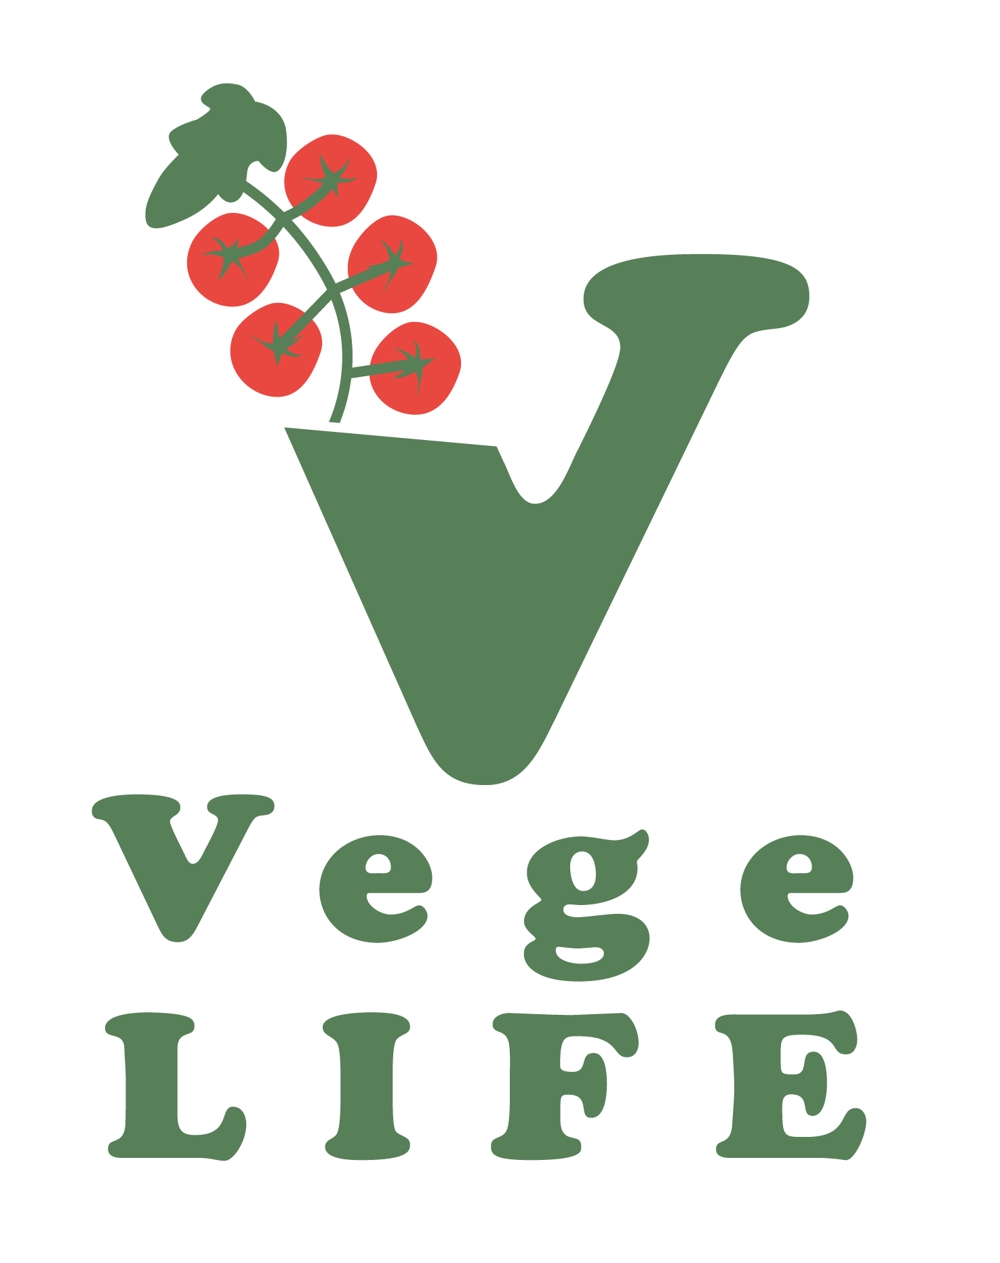 農園『Vege Life』のロゴ作成